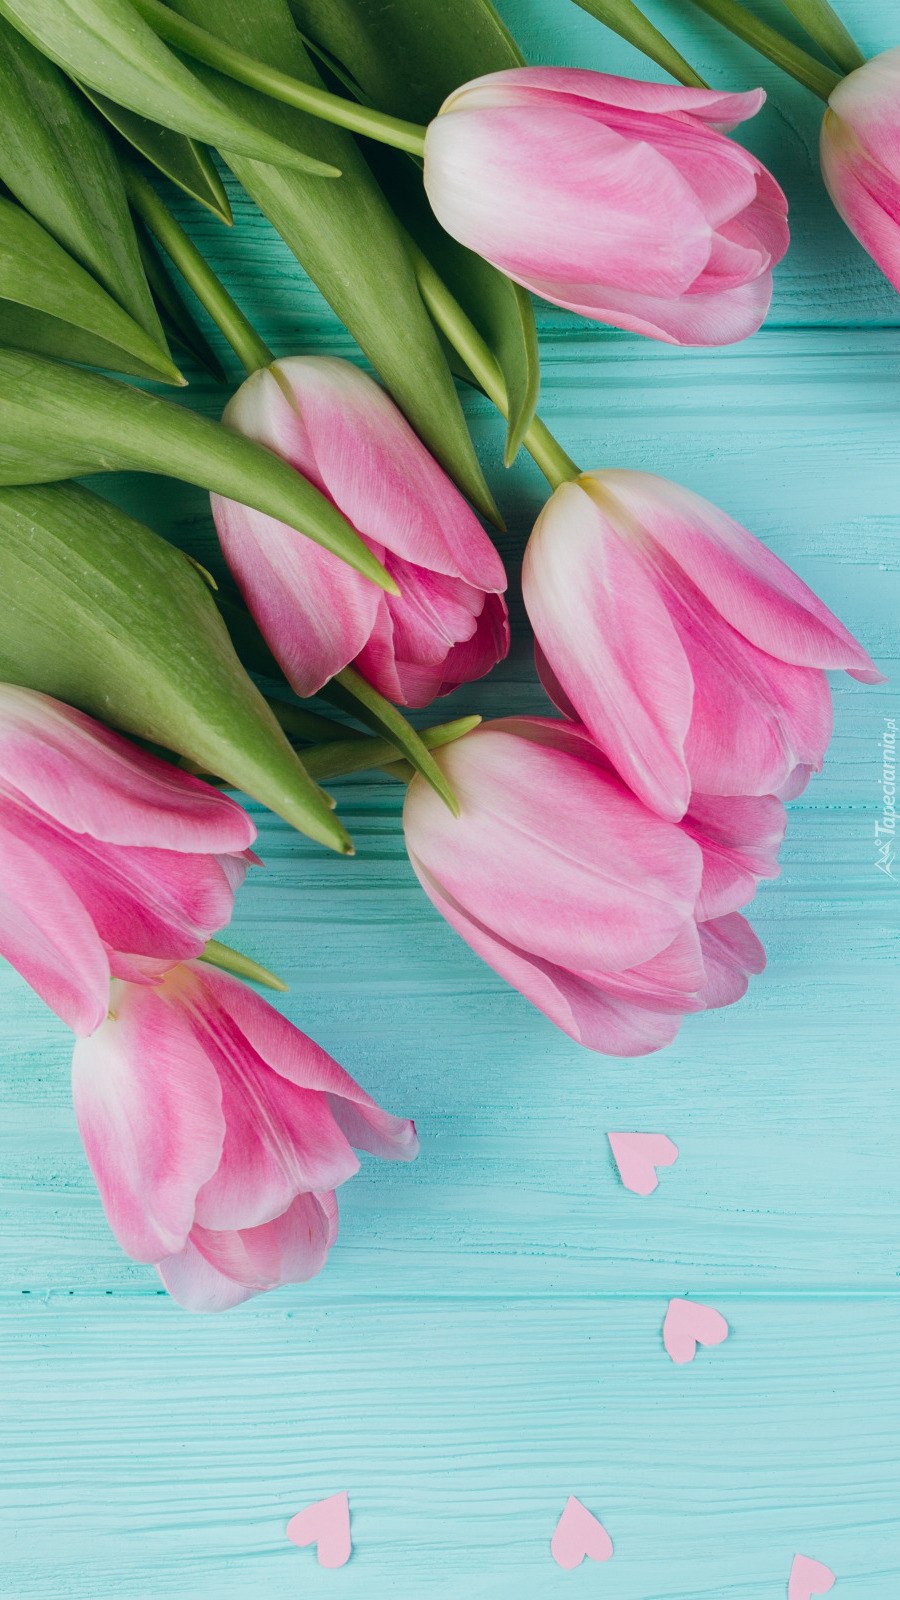 Różowe tulipany i rozsypane serduszka